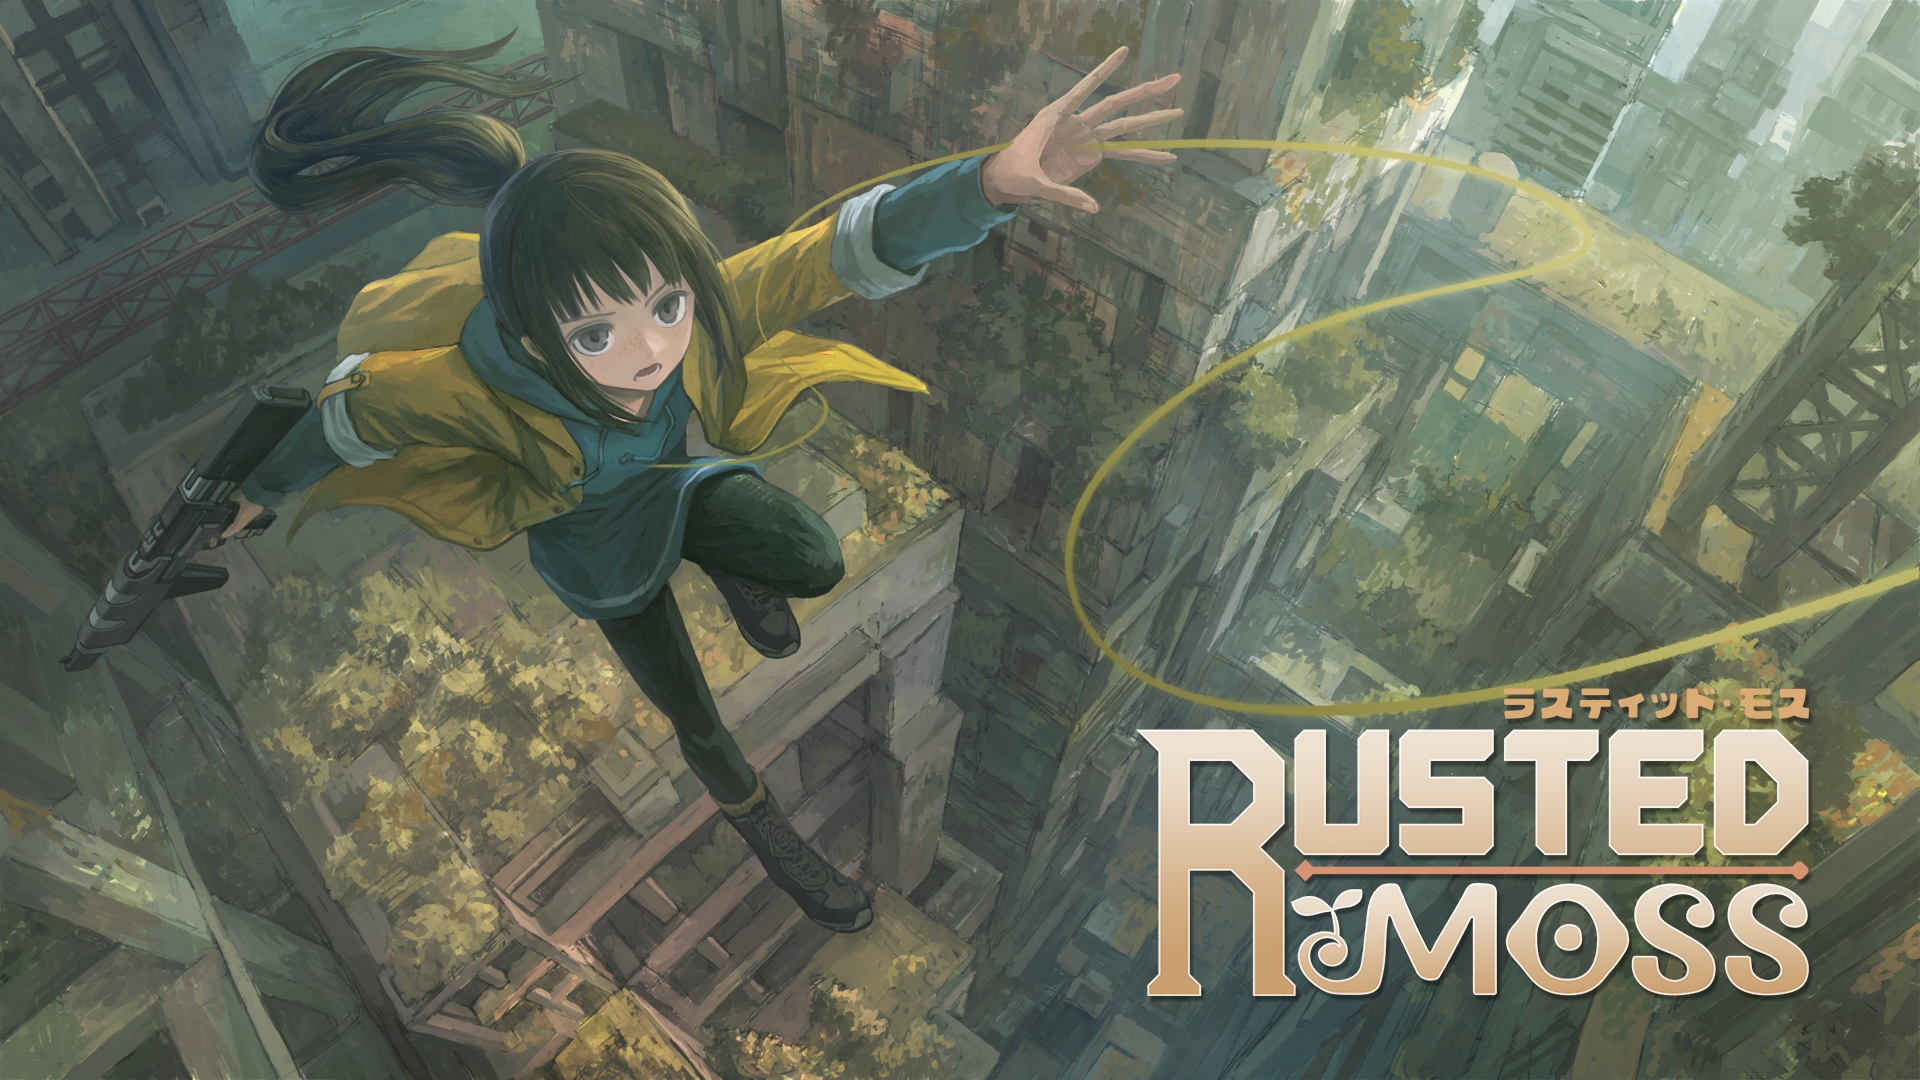 物理引擎吊绳类银河城动作游戏《Rusted Moss》将参与Steam夏日特卖活动